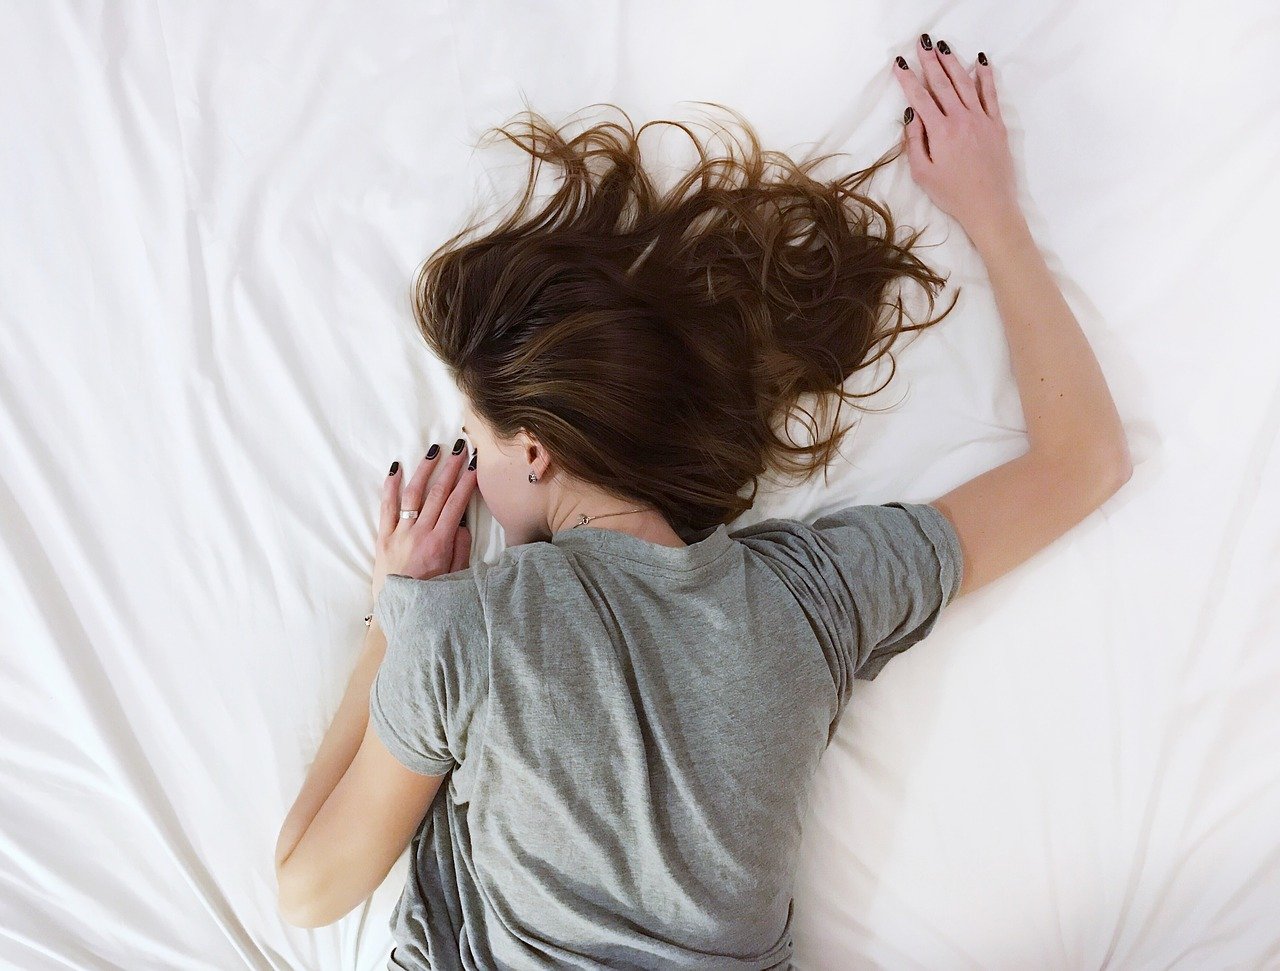 هل النوم على بطنك سيئ؟ ‏النوم على البطن ‏الم و‏التهاب الظهر والرقبة والمفاصل، قلة النوم وعدم الراحة طوال اليوم. النوم البطن الحامل